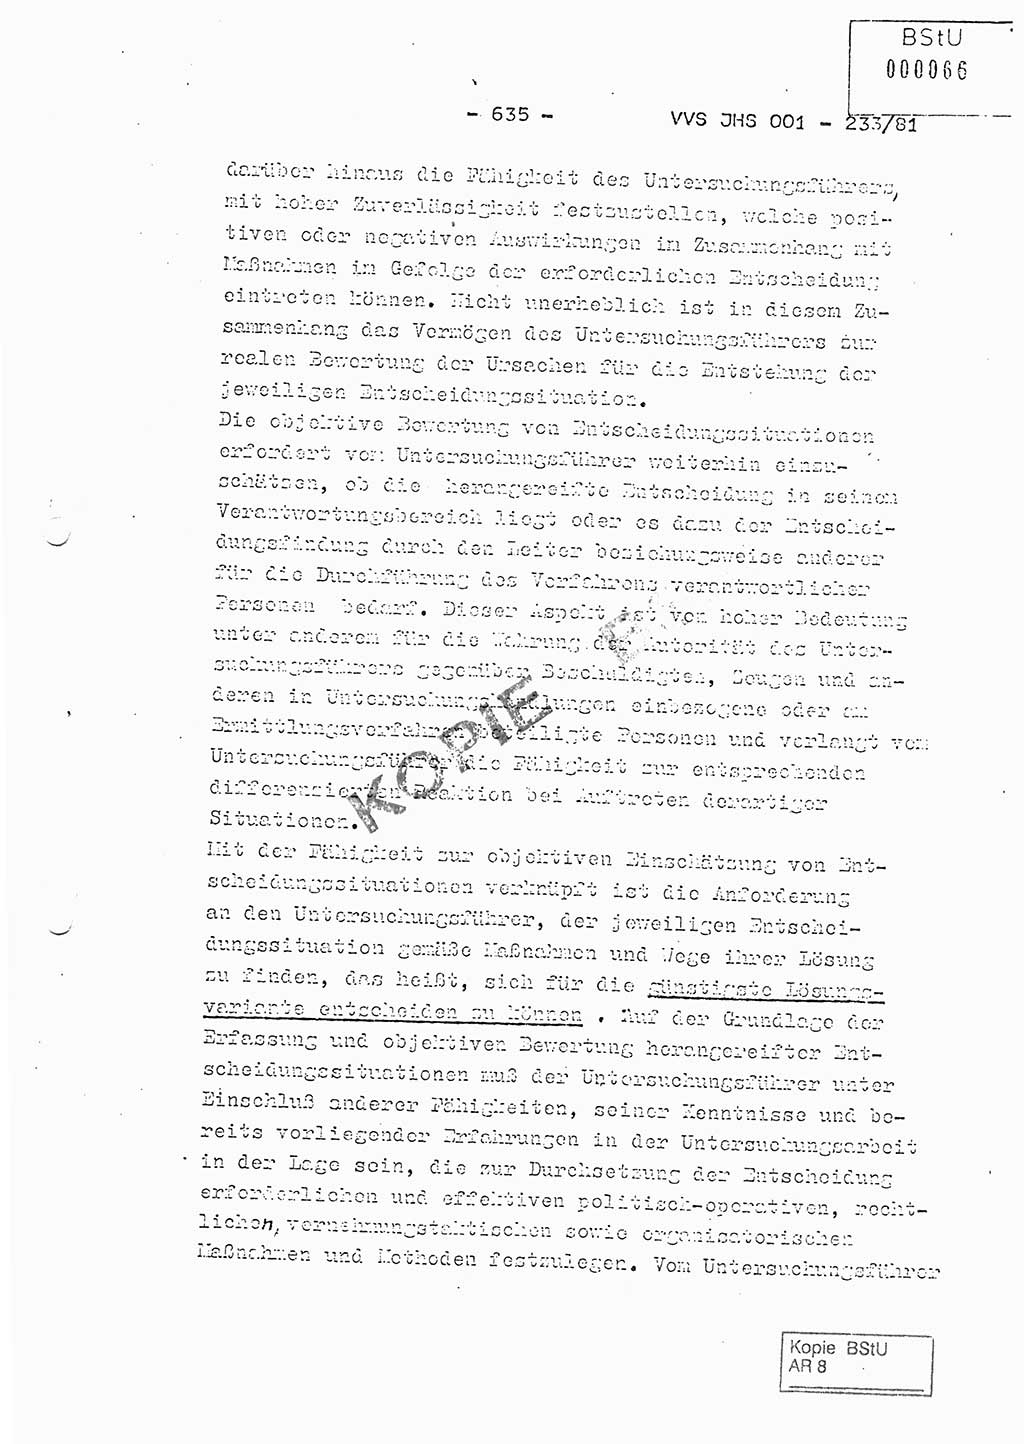 Dissertation Oberstleutnant Horst Zank (JHS), Oberstleutnant Dr. Karl-Heinz Knoblauch (JHS), Oberstleutnant Gustav-Adolf Kowalewski (HA Ⅸ), Oberstleutnant Wolfgang Plötner (HA Ⅸ), Ministerium für Staatssicherheit (MfS) [Deutsche Demokratische Republik (DDR)], Juristische Hochschule (JHS), Vertrauliche Verschlußsache (VVS) o001-233/81, Potsdam 1981, Blatt 635 (Diss. MfS DDR JHS VVS o001-233/81 1981, Bl. 635)